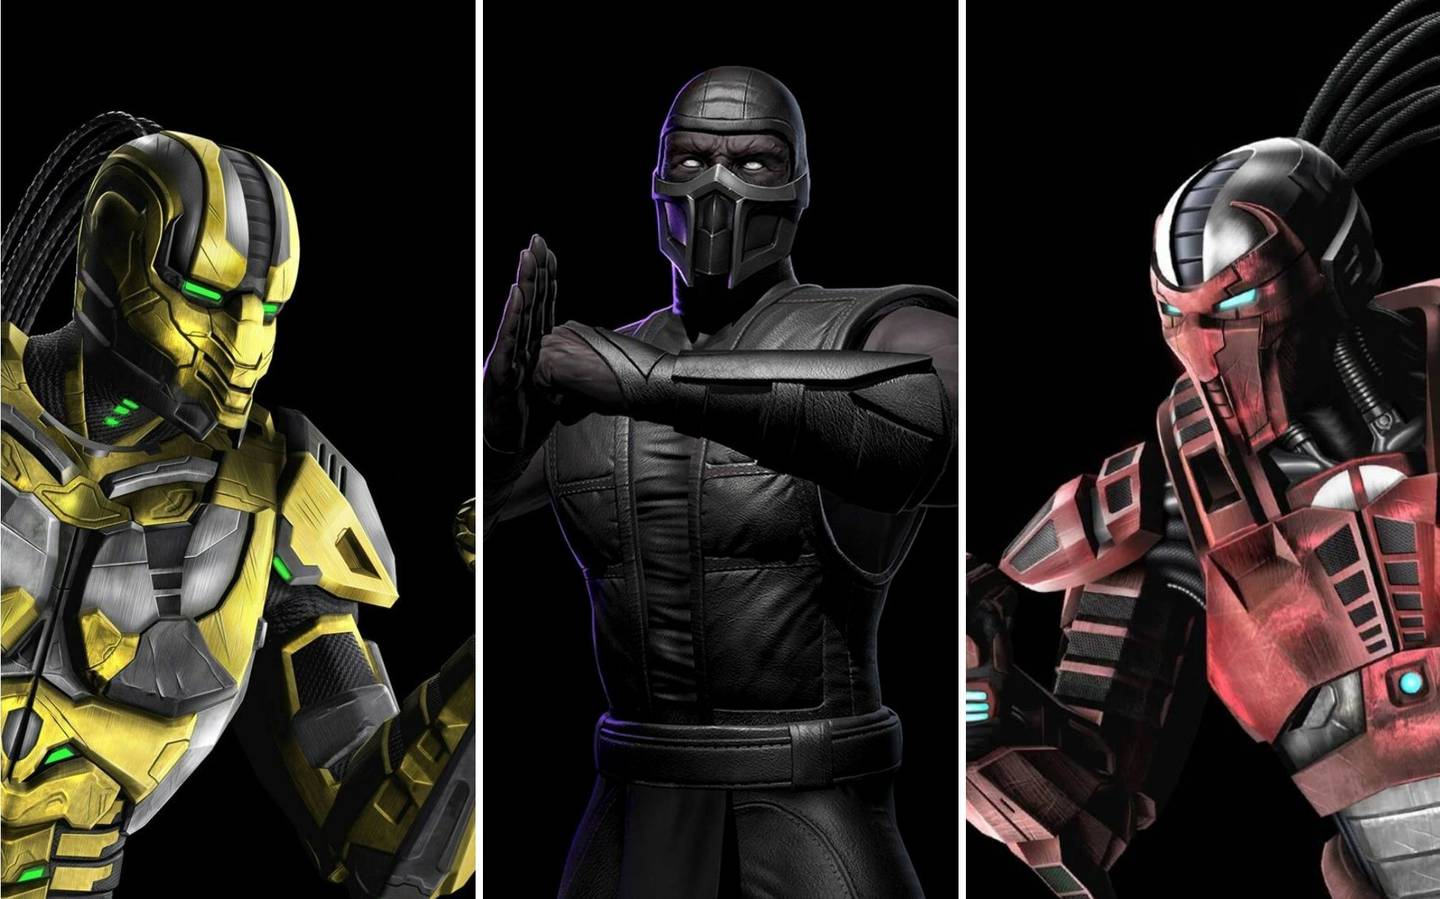 Cyrax (izquierda), Noob Saibot (centro) y Sektor (derecha) son tres personajes clásicos que hacen su regreso a Mortal Kombat 1. Foto: WB Games.